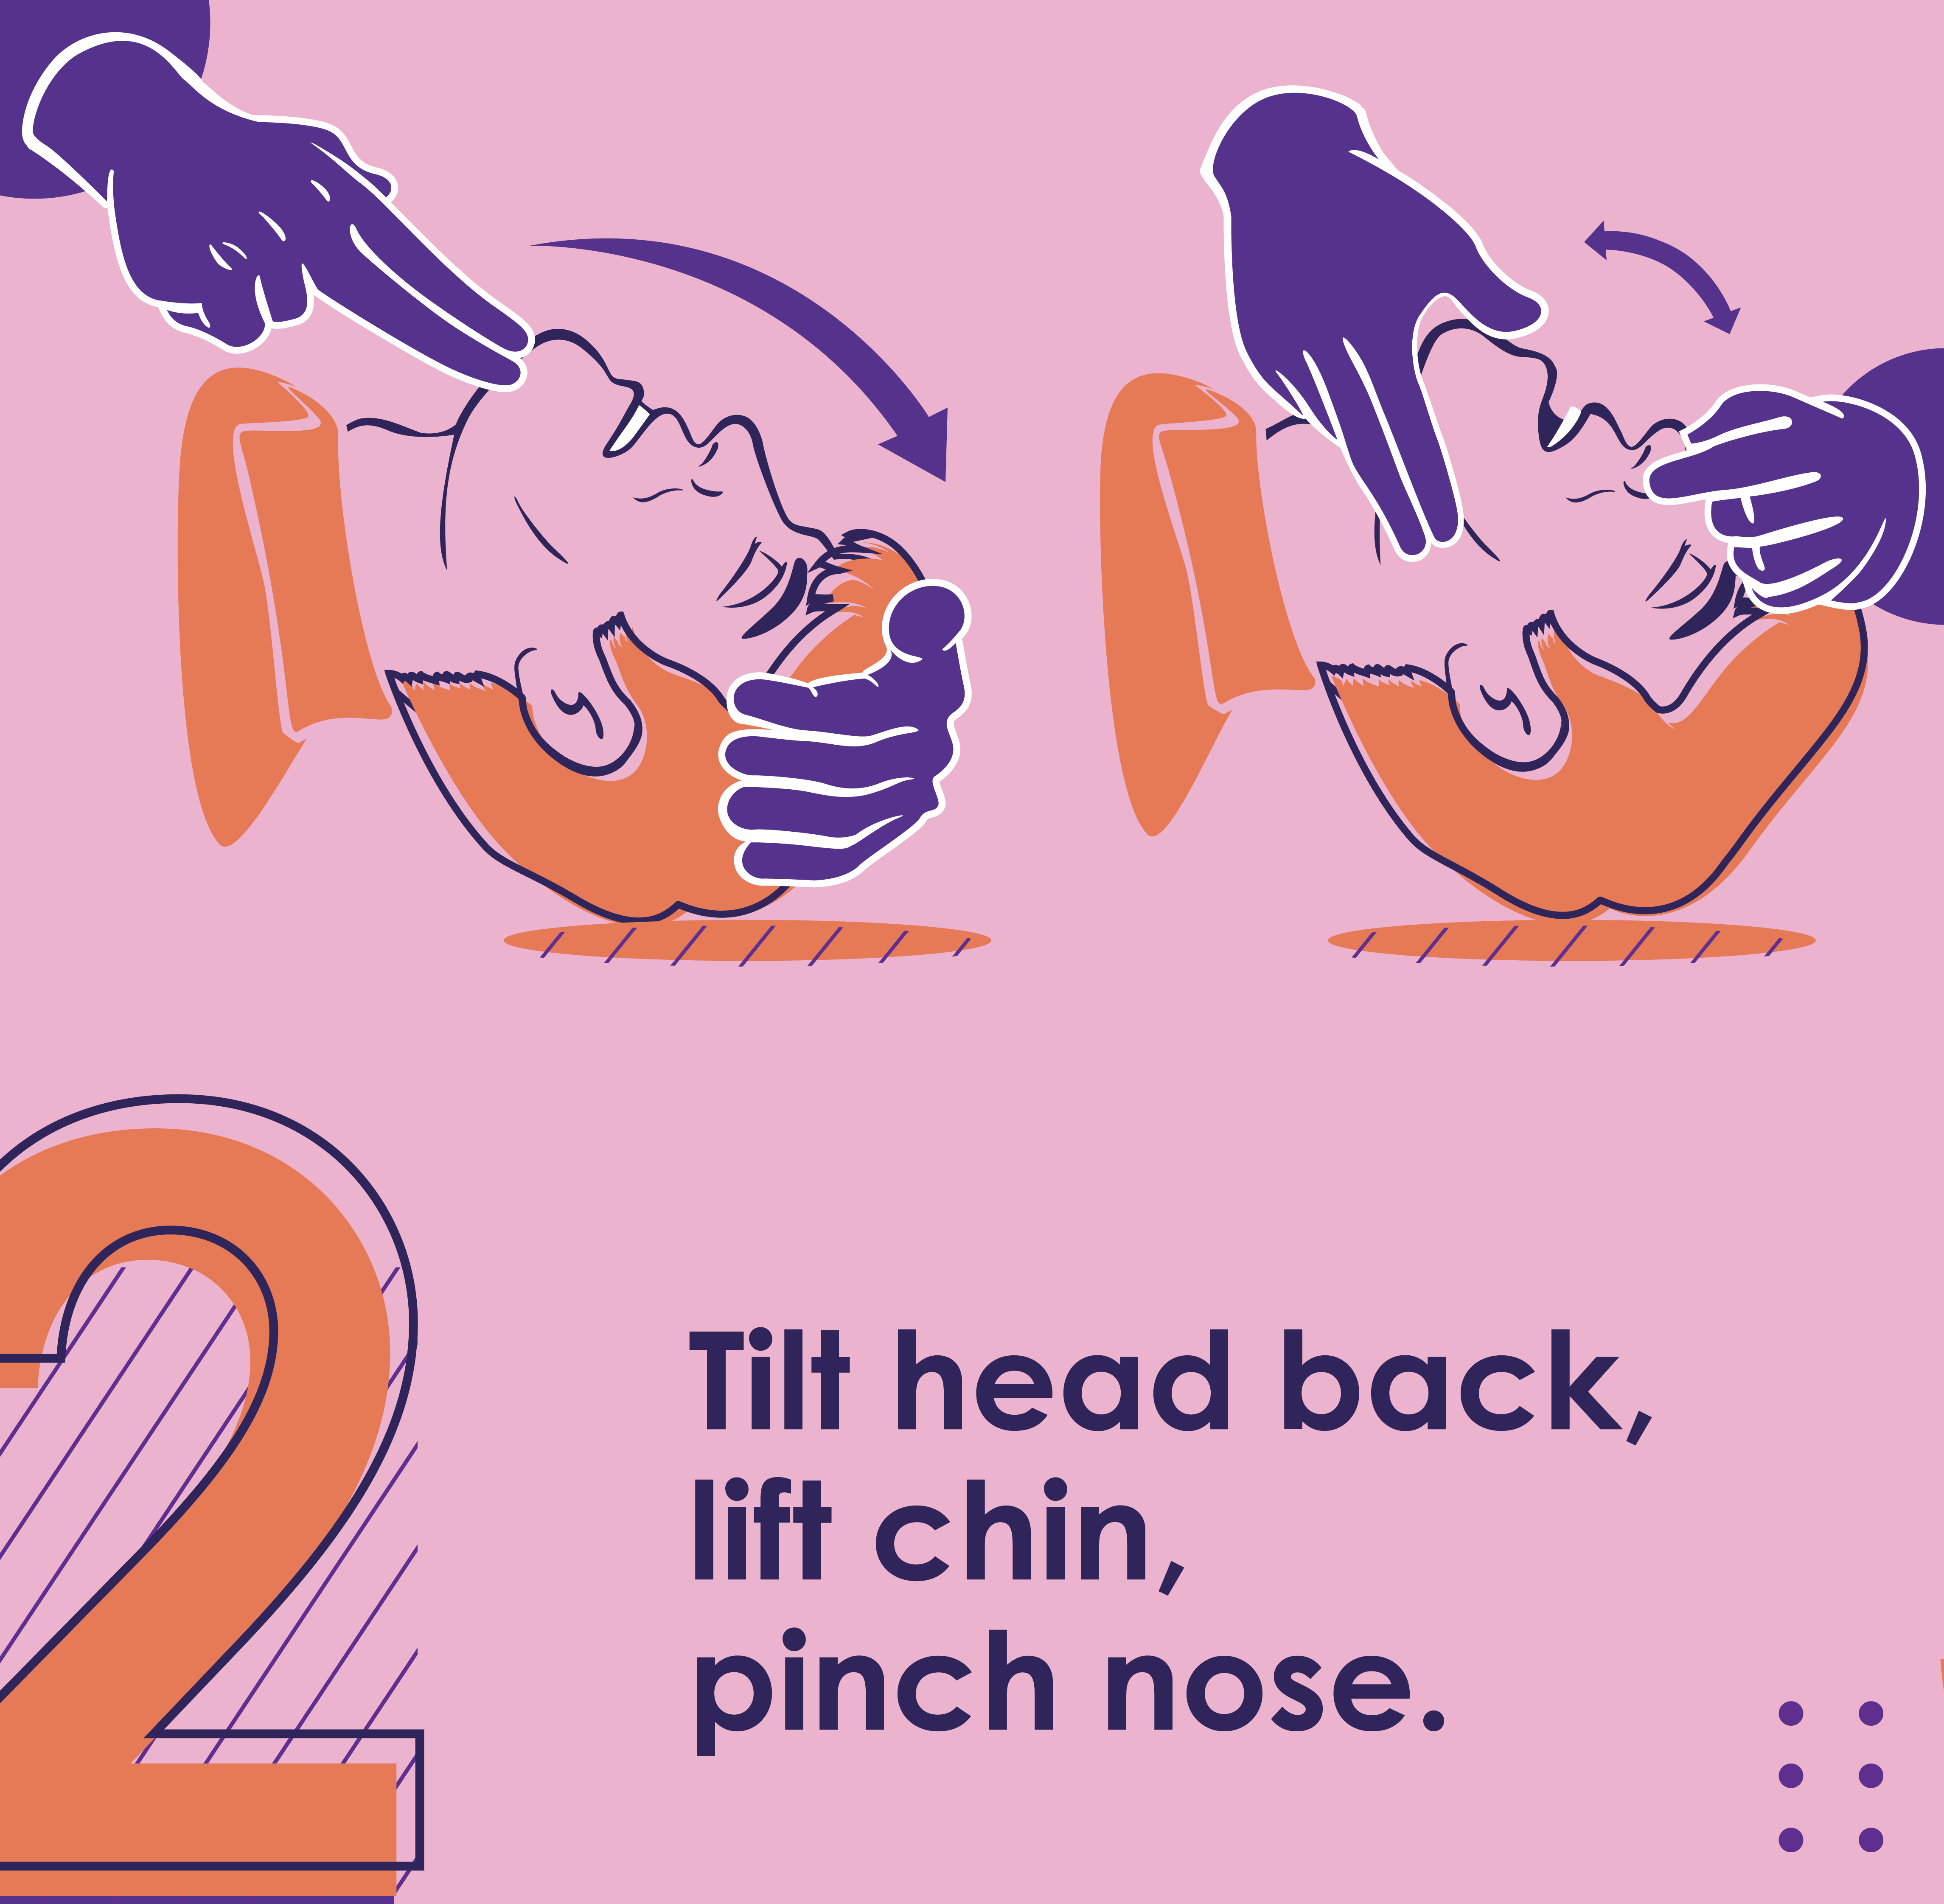 Tilt head back, lift chin, pinch nose.